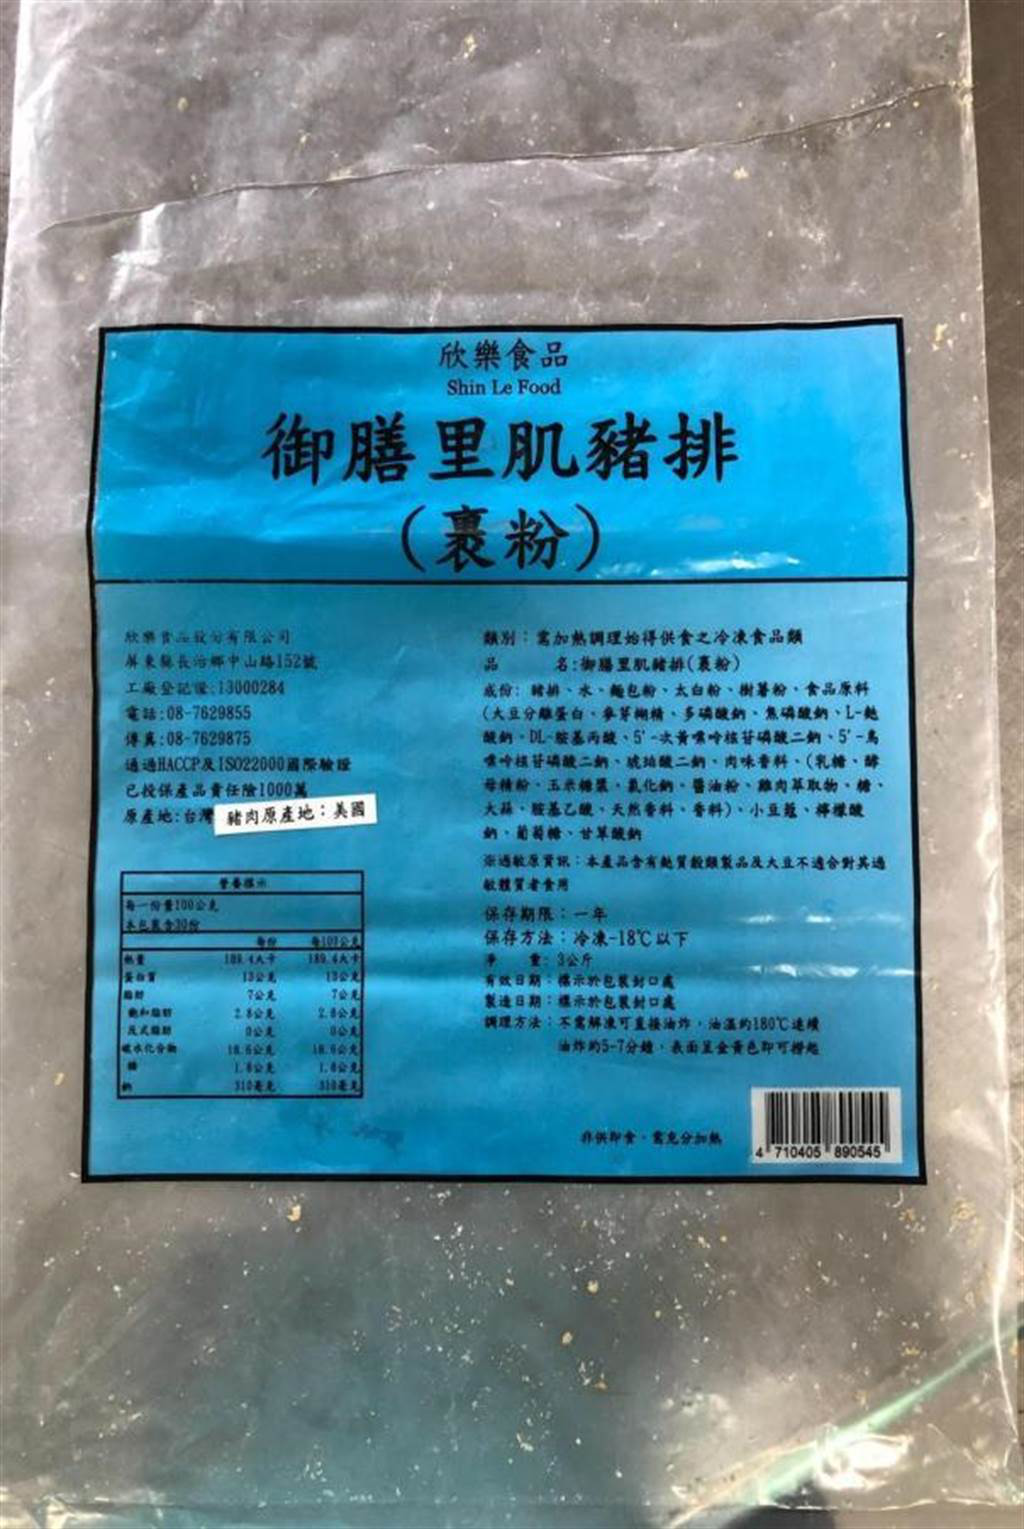 台湾海军吃的猪排，外箱注明原产地台湾，但内包装竟标示原产地为美国。图自“靠北长官2021”脸书